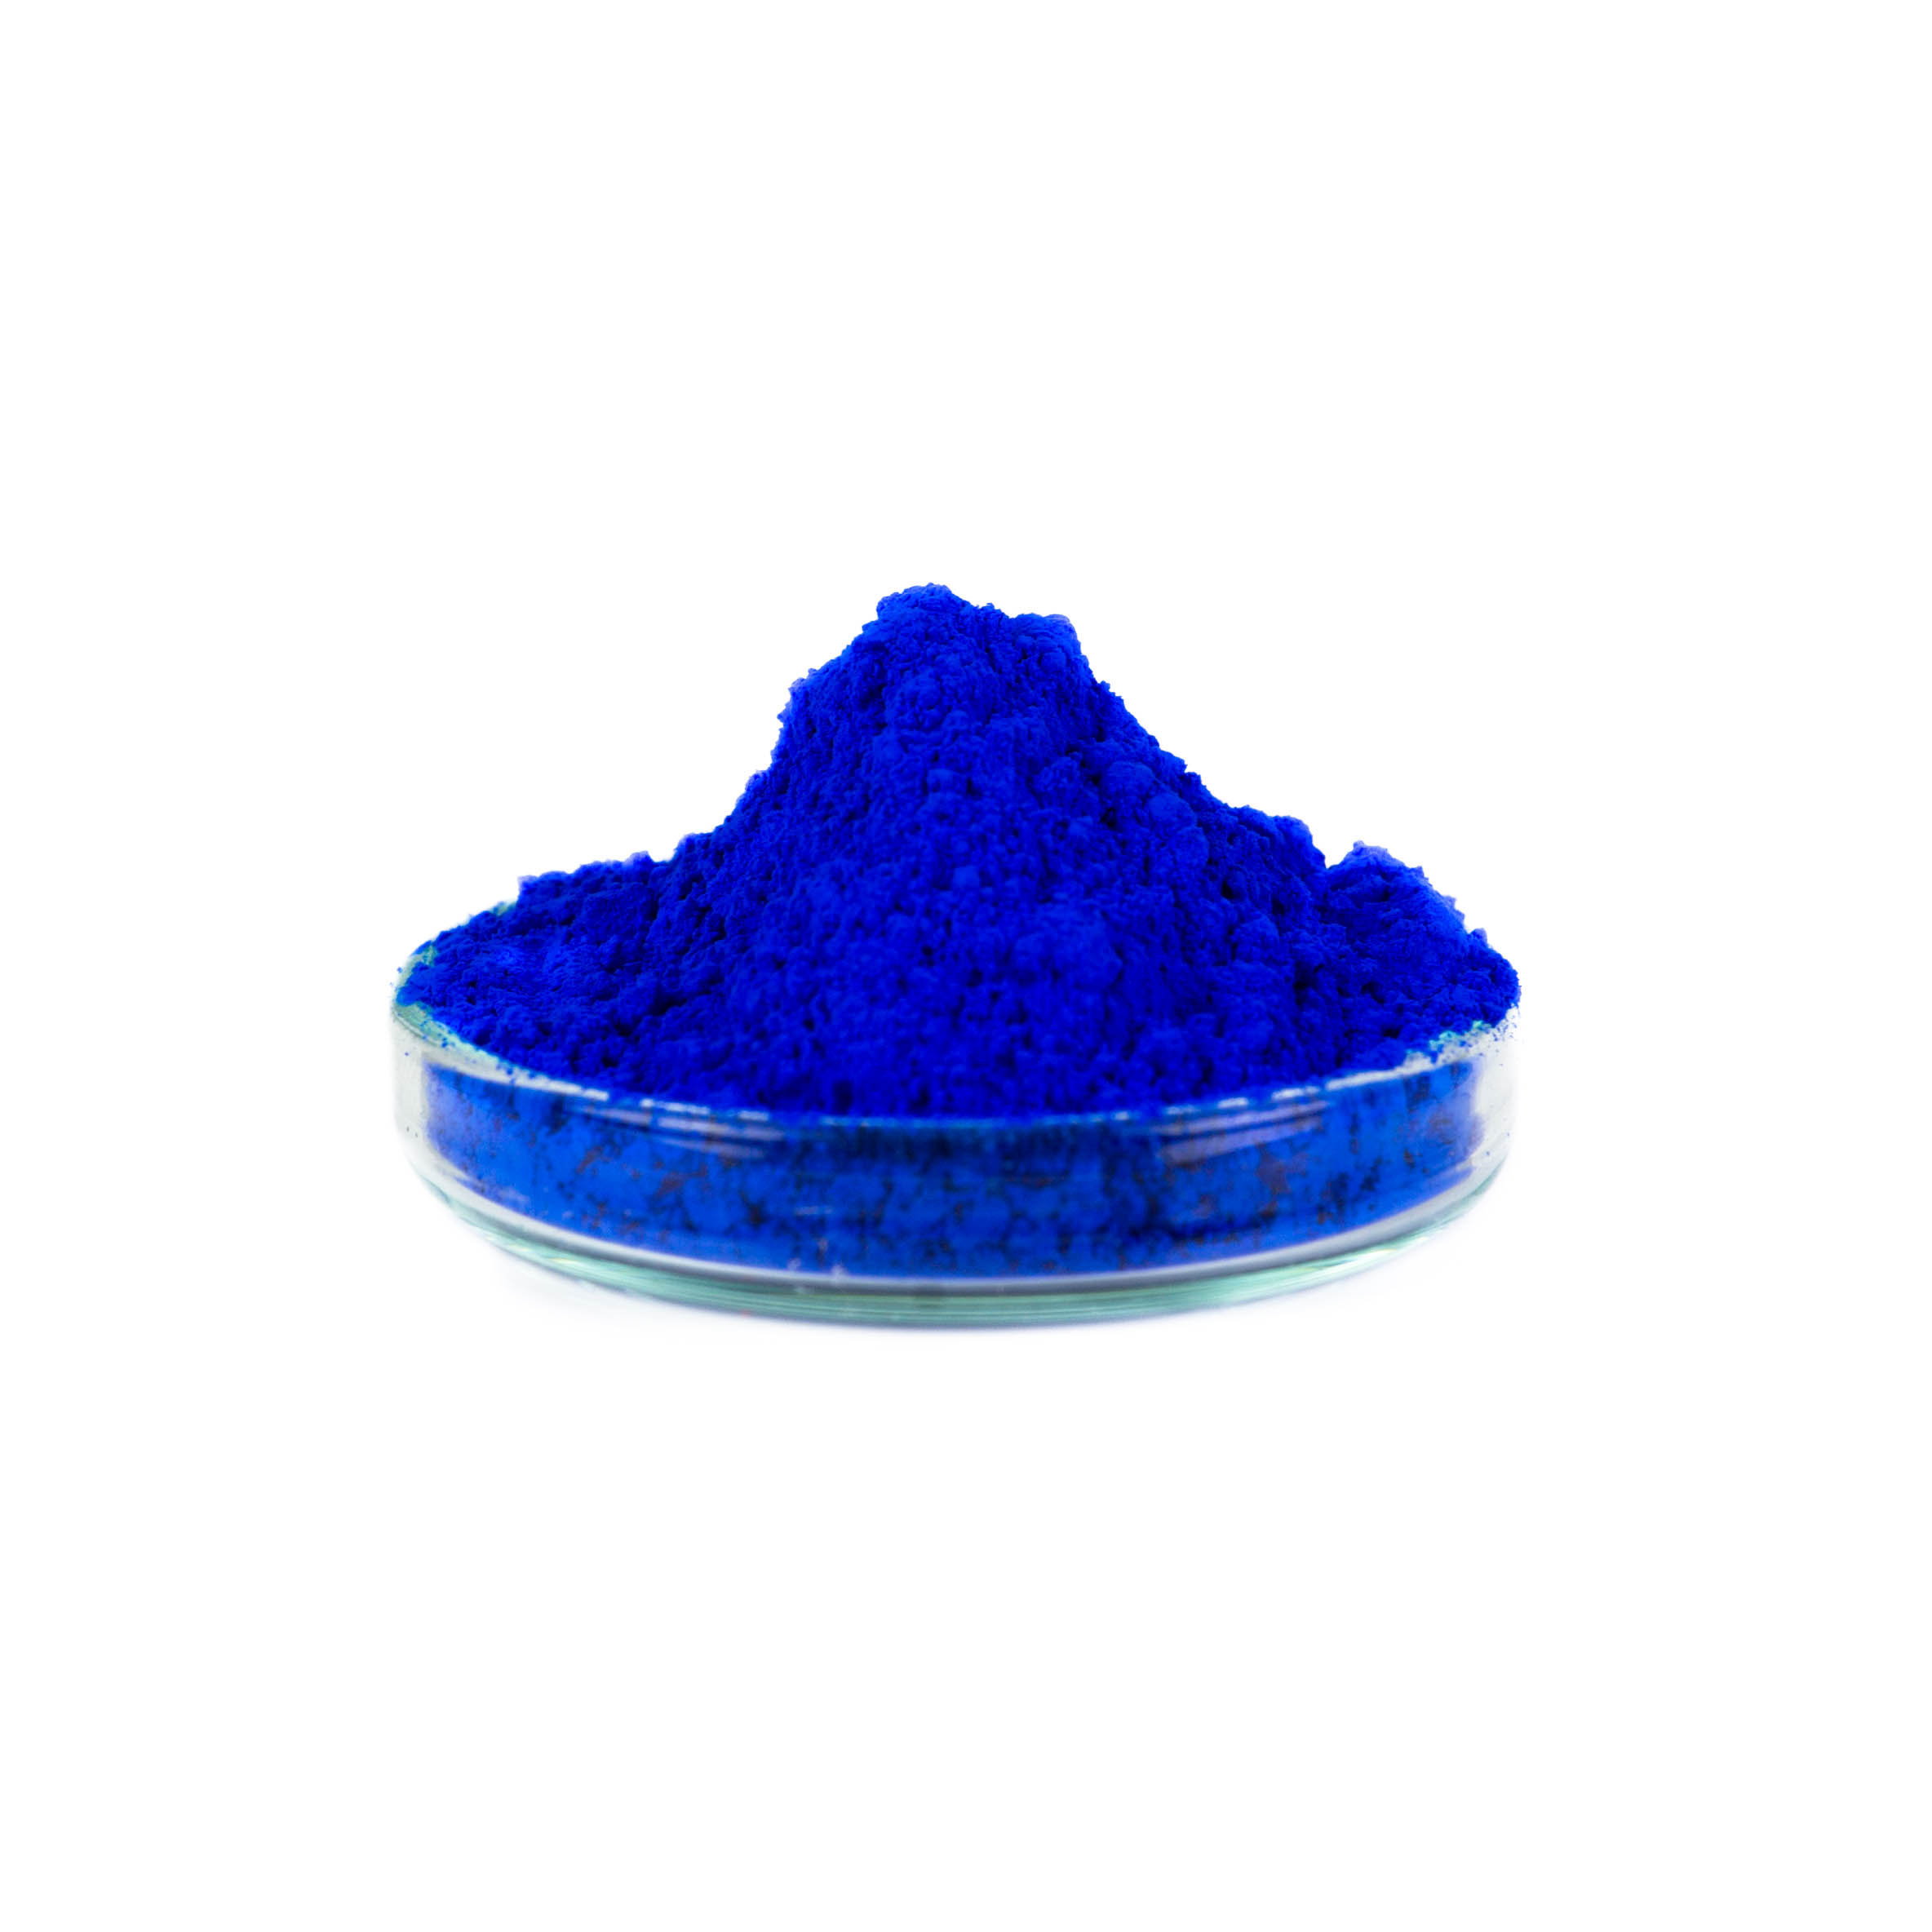 Barviva 30g - Fluoro modrá